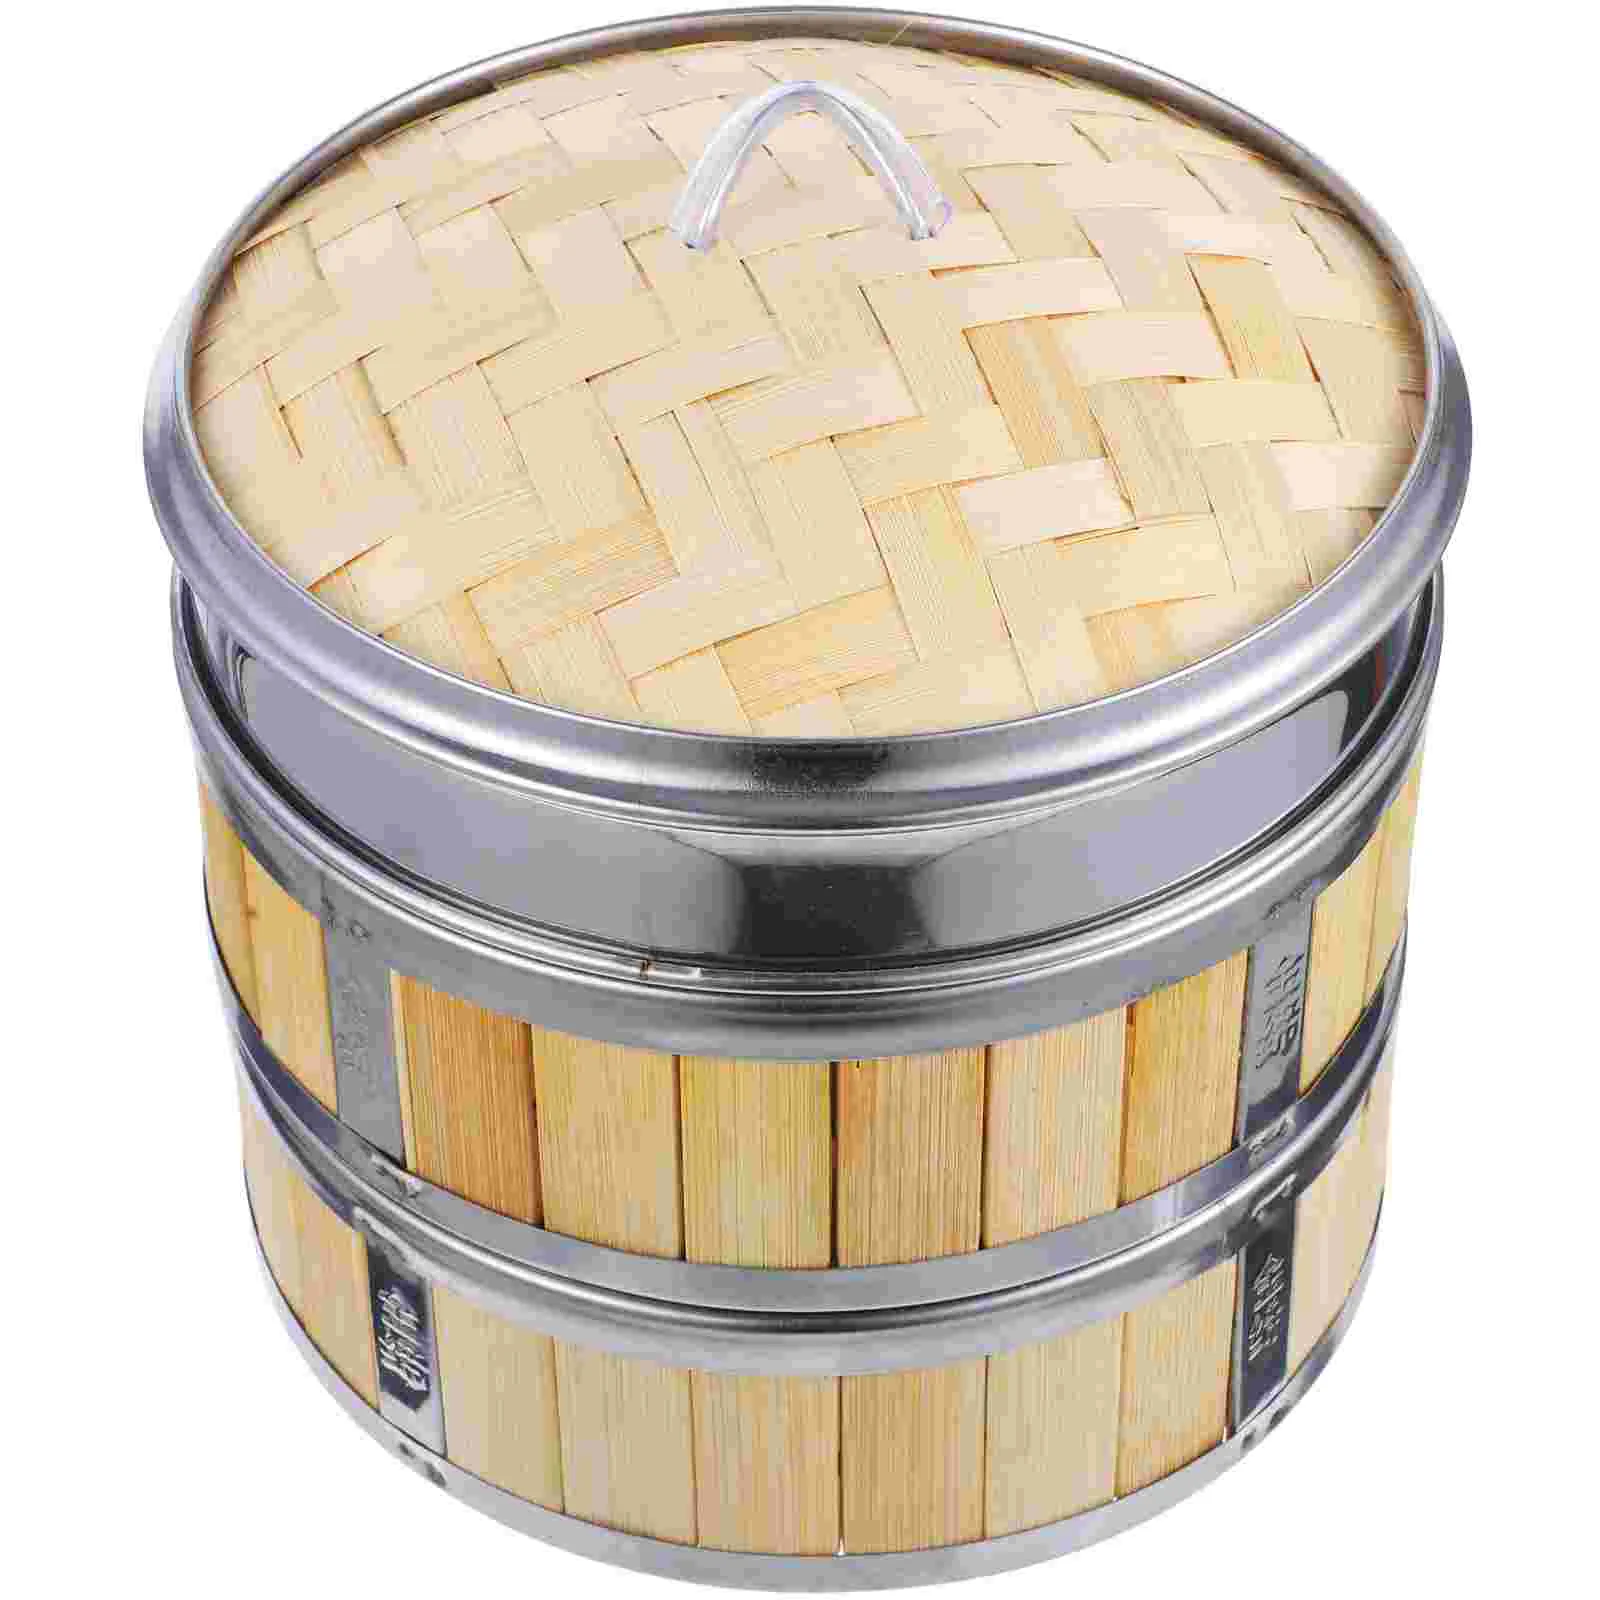 

Бамбуковая корзина для пароварки Bao, удобная бамбуковая посуда для приготовления пищи, практичная булочка